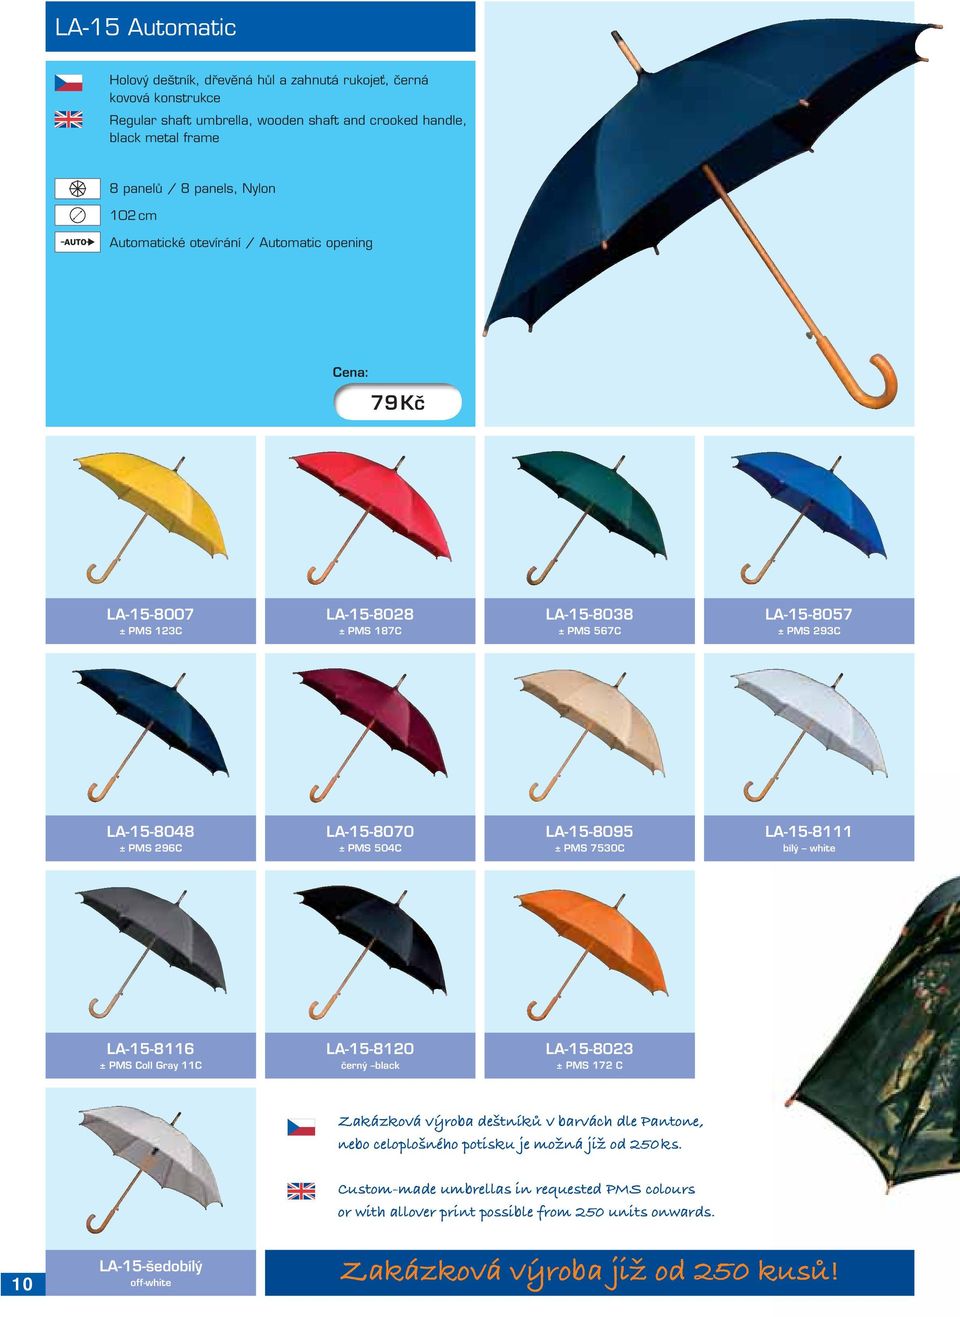 LA-15-8095 ± PMS 7530C LA-15-8111 bílý white LA-15-8116 ± PMS Coll Gray 11C LA-15-8120 černý black LA-15-8023 ± PMS 172 C Zakázková výroba deštníků v barvách dle Pantone, nebo celoplošného